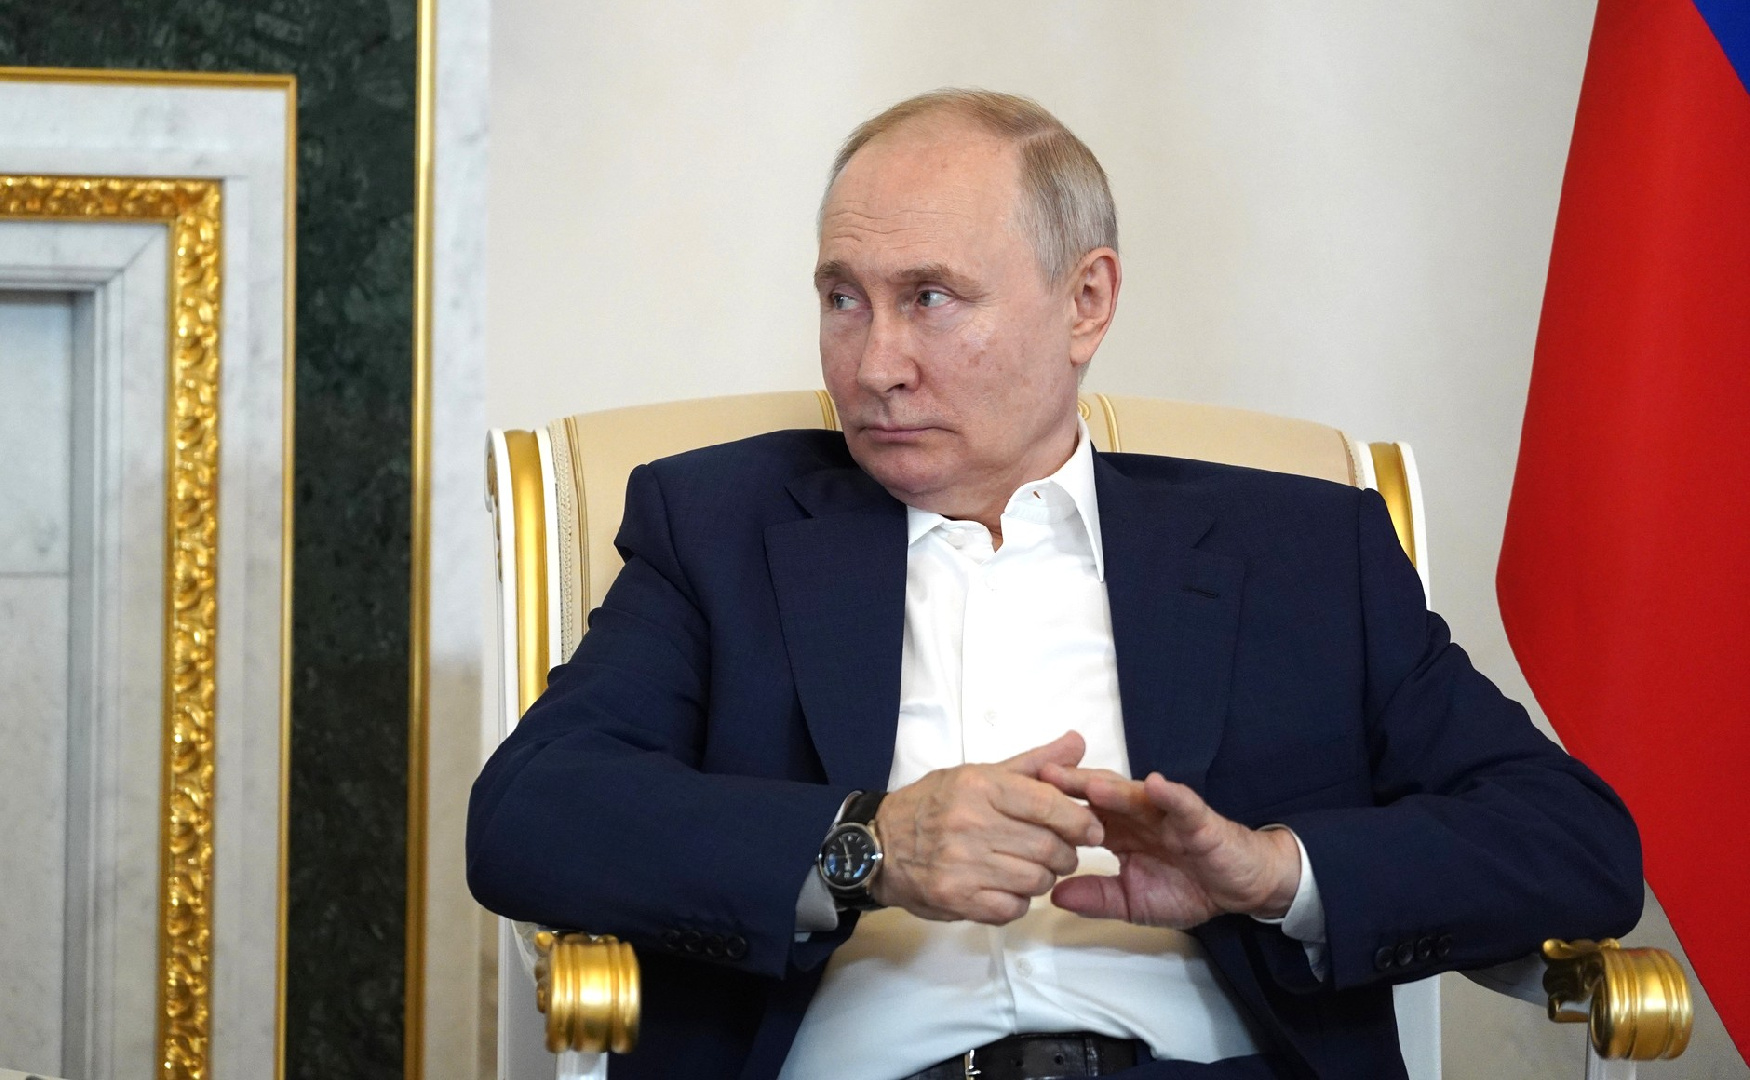 Повышение МРОТ и индексация пенсий: какие законы подписал президент России